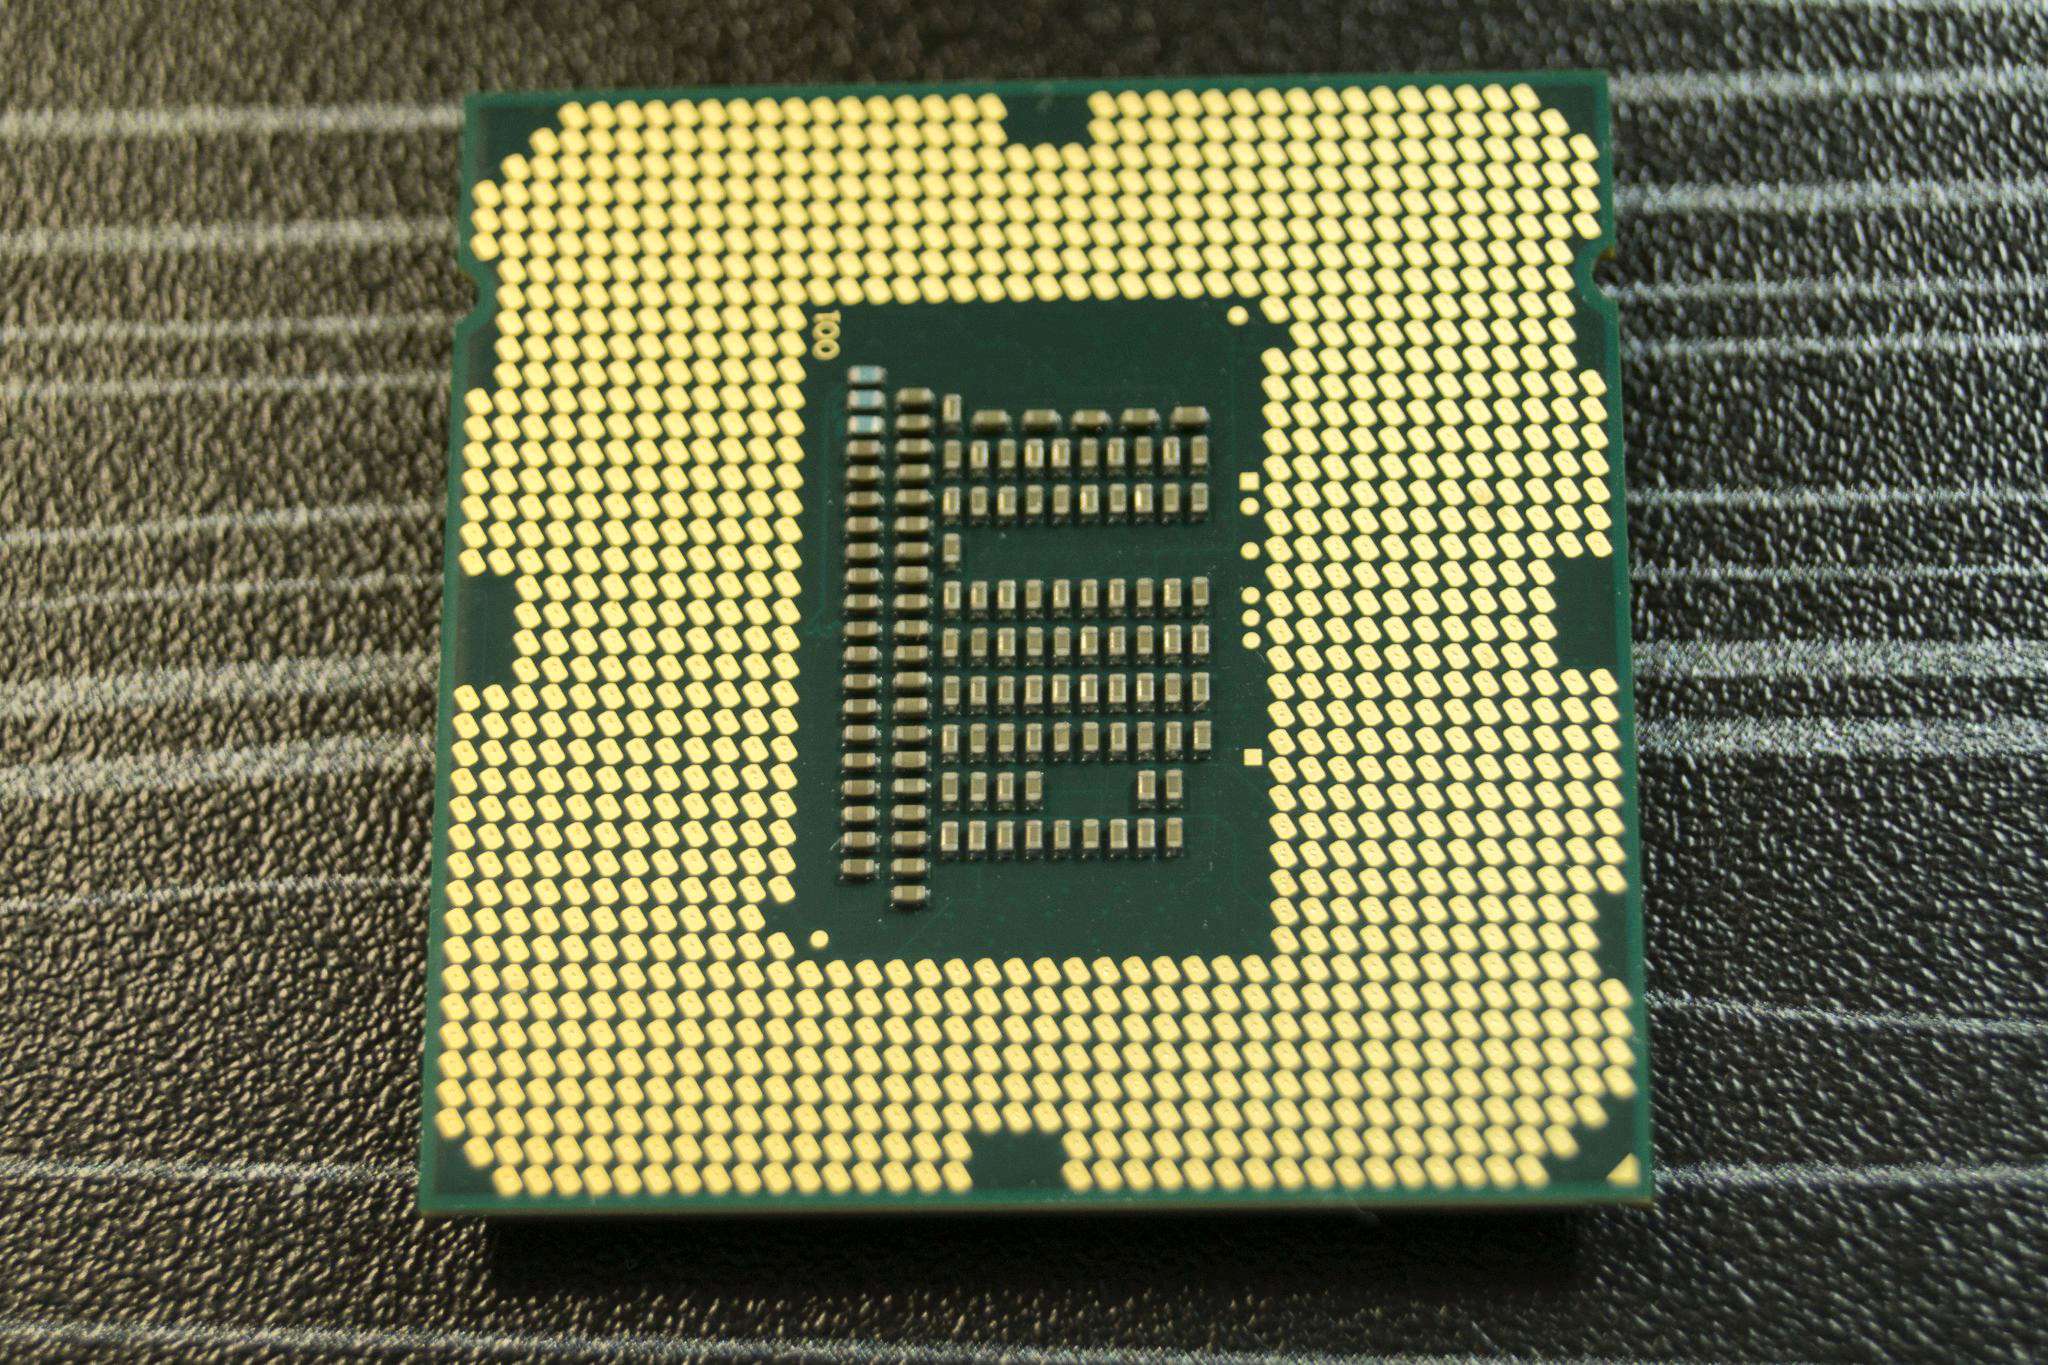 3220 сокет. Lga1155 Core i3. Core i3 3220 сокет. Сокет LGA 1155 (Socket h2). Intel Core i3-3220 CPU 3.30GHZ.